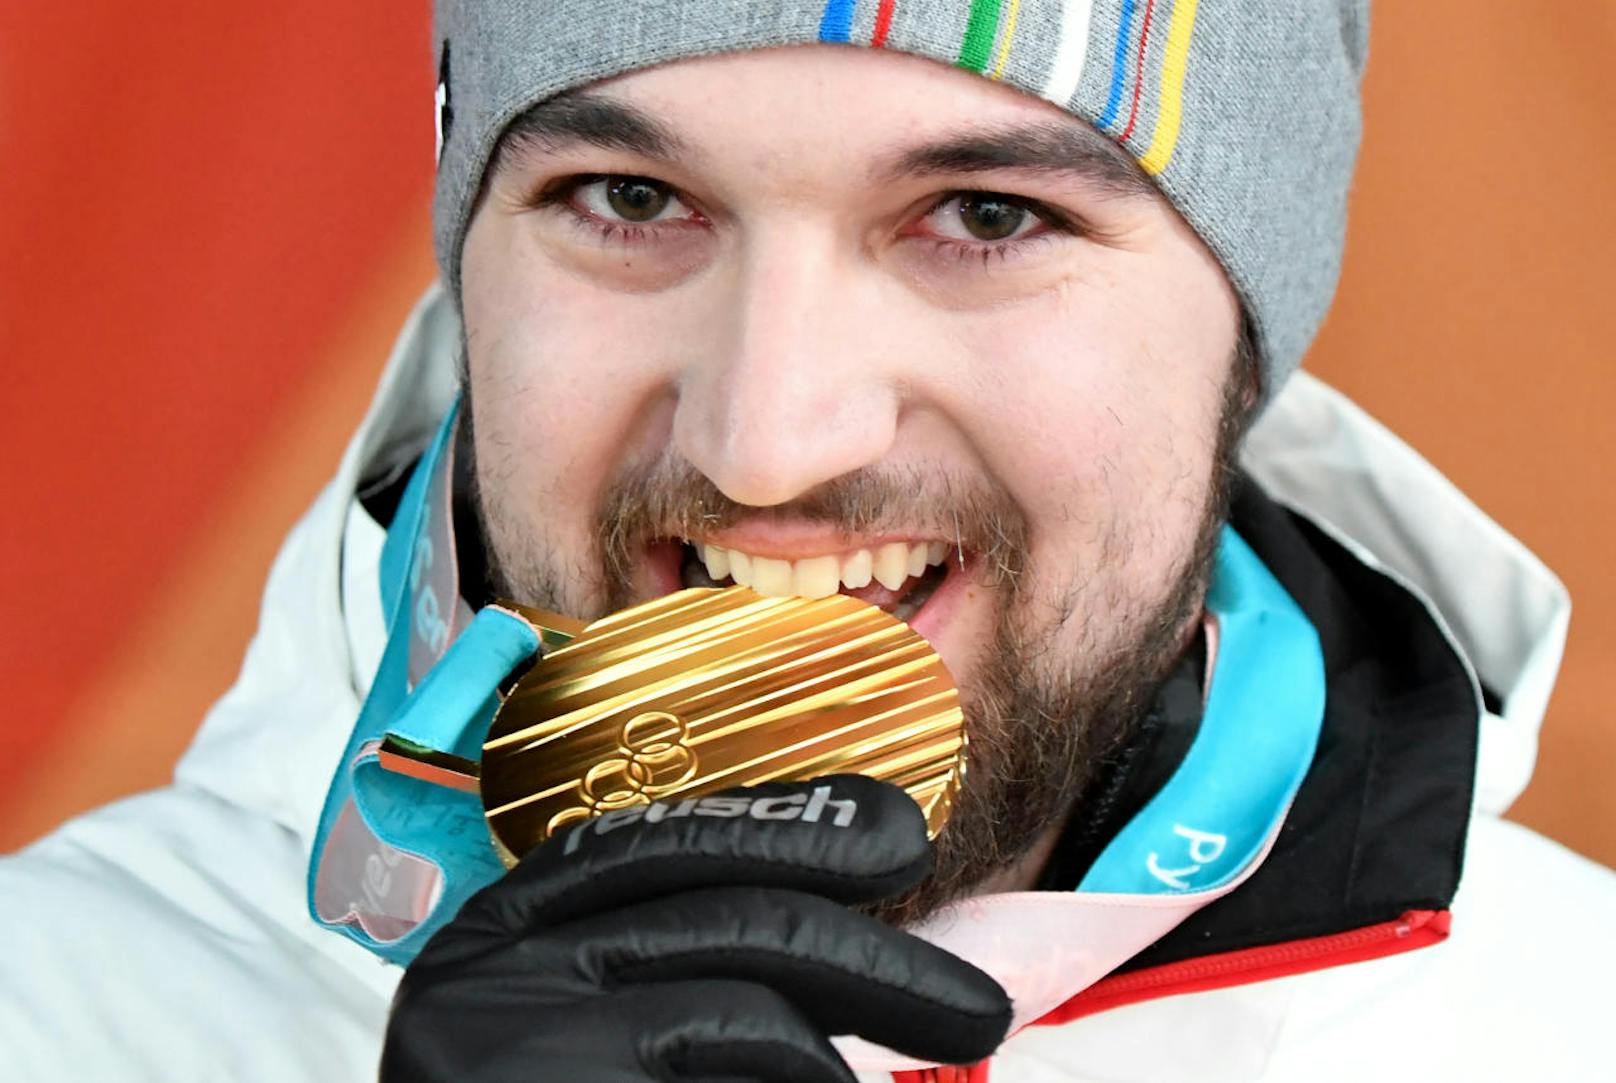 Österreichs Rodel-Ass David Gleirscher katapultierte sich in Pyeongchang in die Weltspitze. Der Tiroler raste im Olympischen Eiskanal am 10. Februar sensationell zur Goldmedaille, es folgte die Bronzemedaille im Teambewerb.